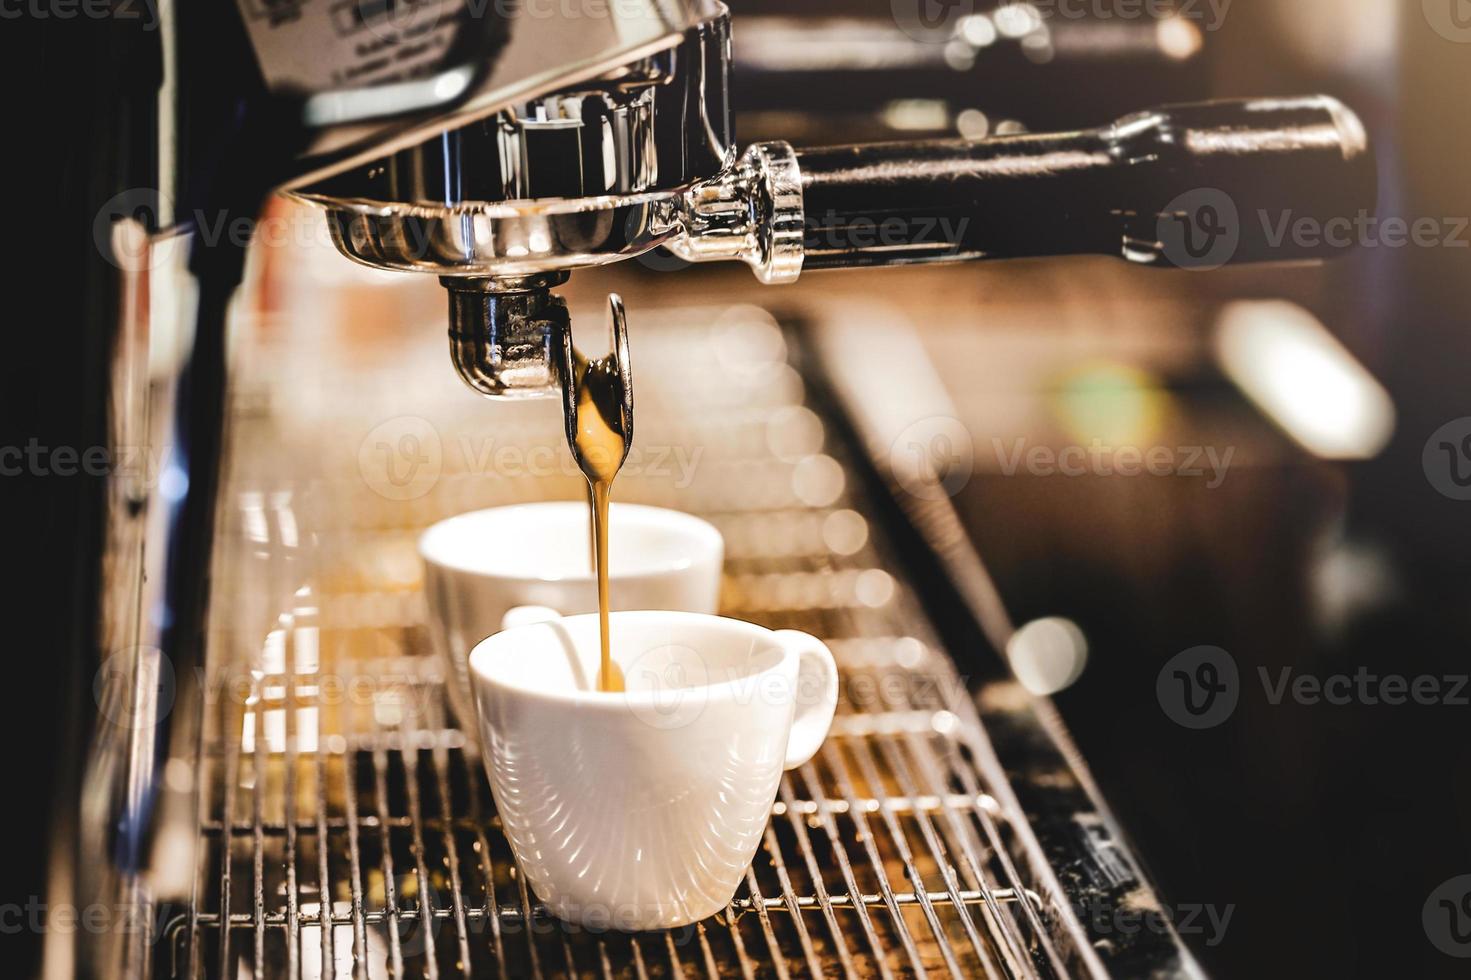 máquina de café espresso preparando un café foto